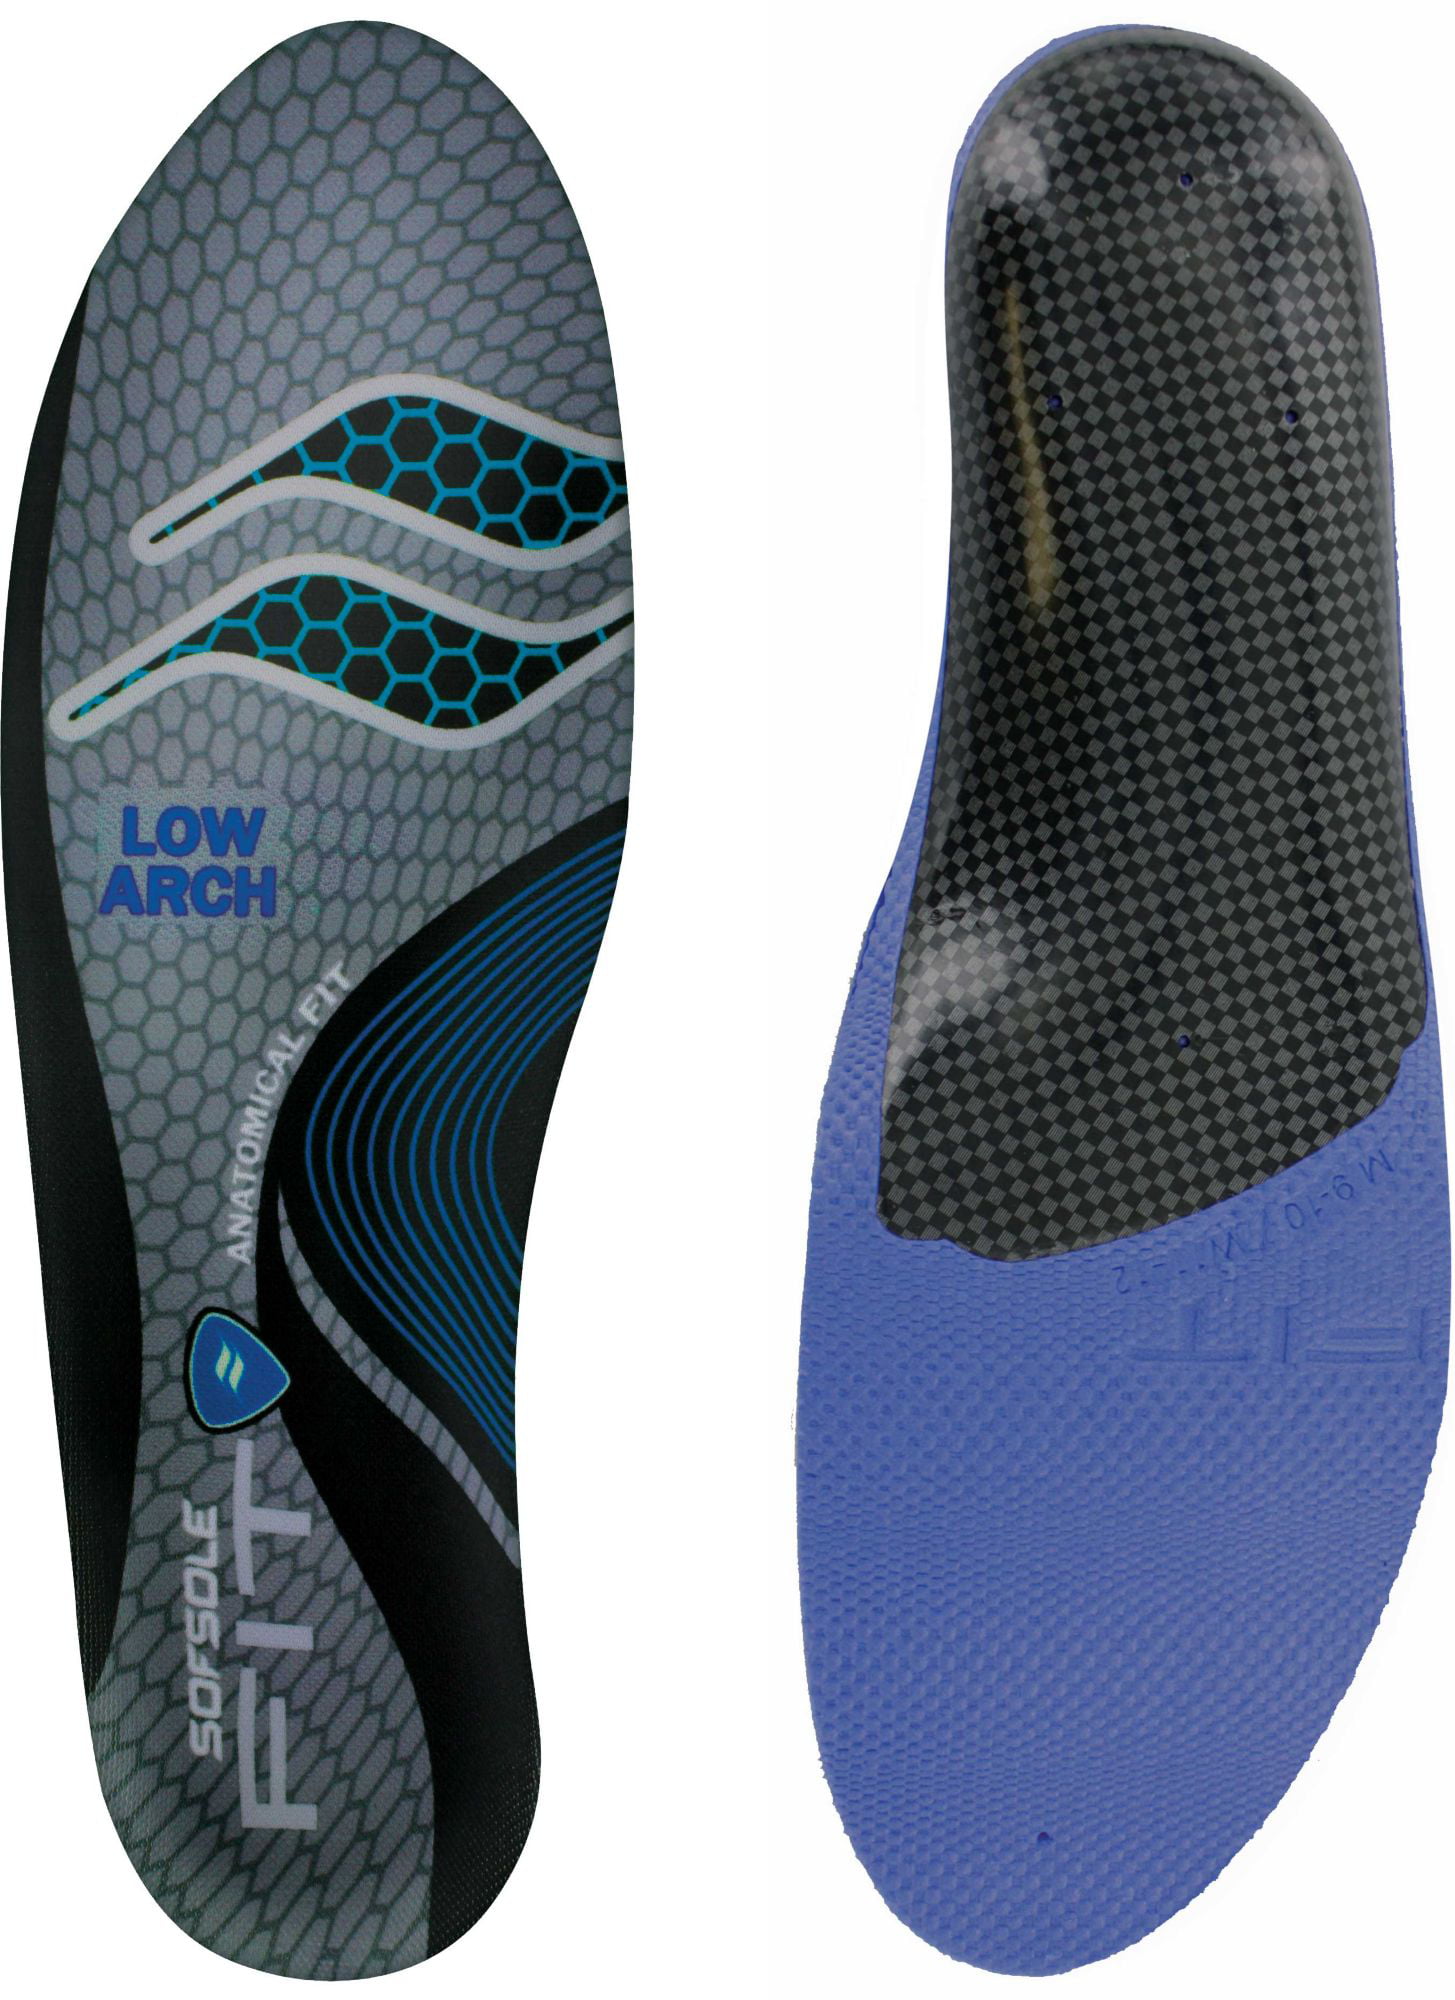 Sof Sole Insoles Unisex FIT Support Full-Length Foam Shoe Insert, Women ...